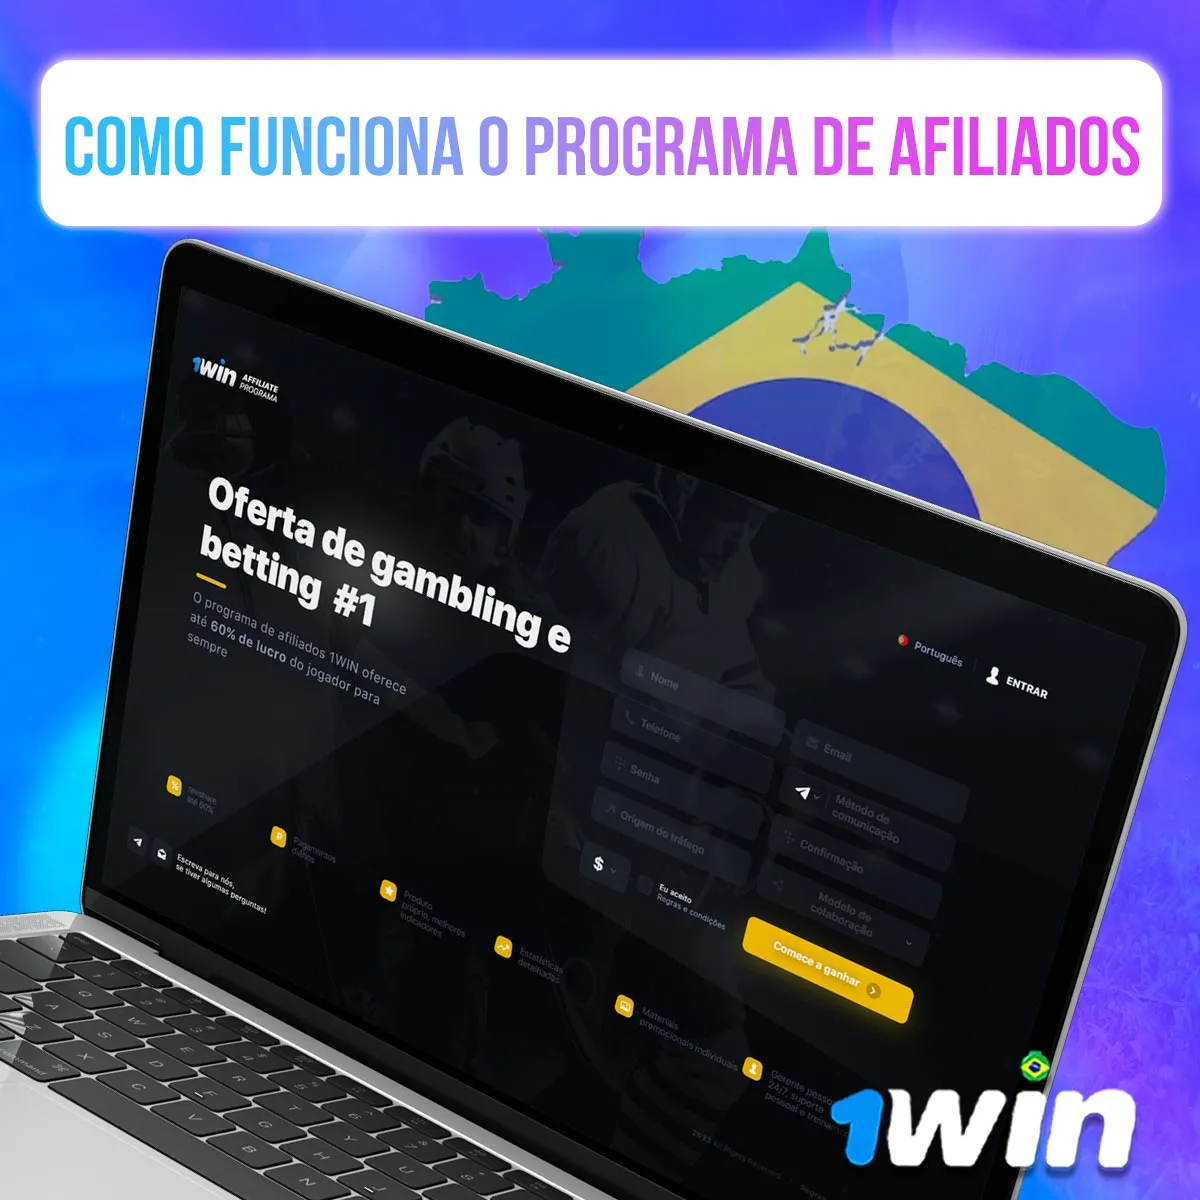 Como funciona o Programa de Afiliados 1win no mercado brasileiro